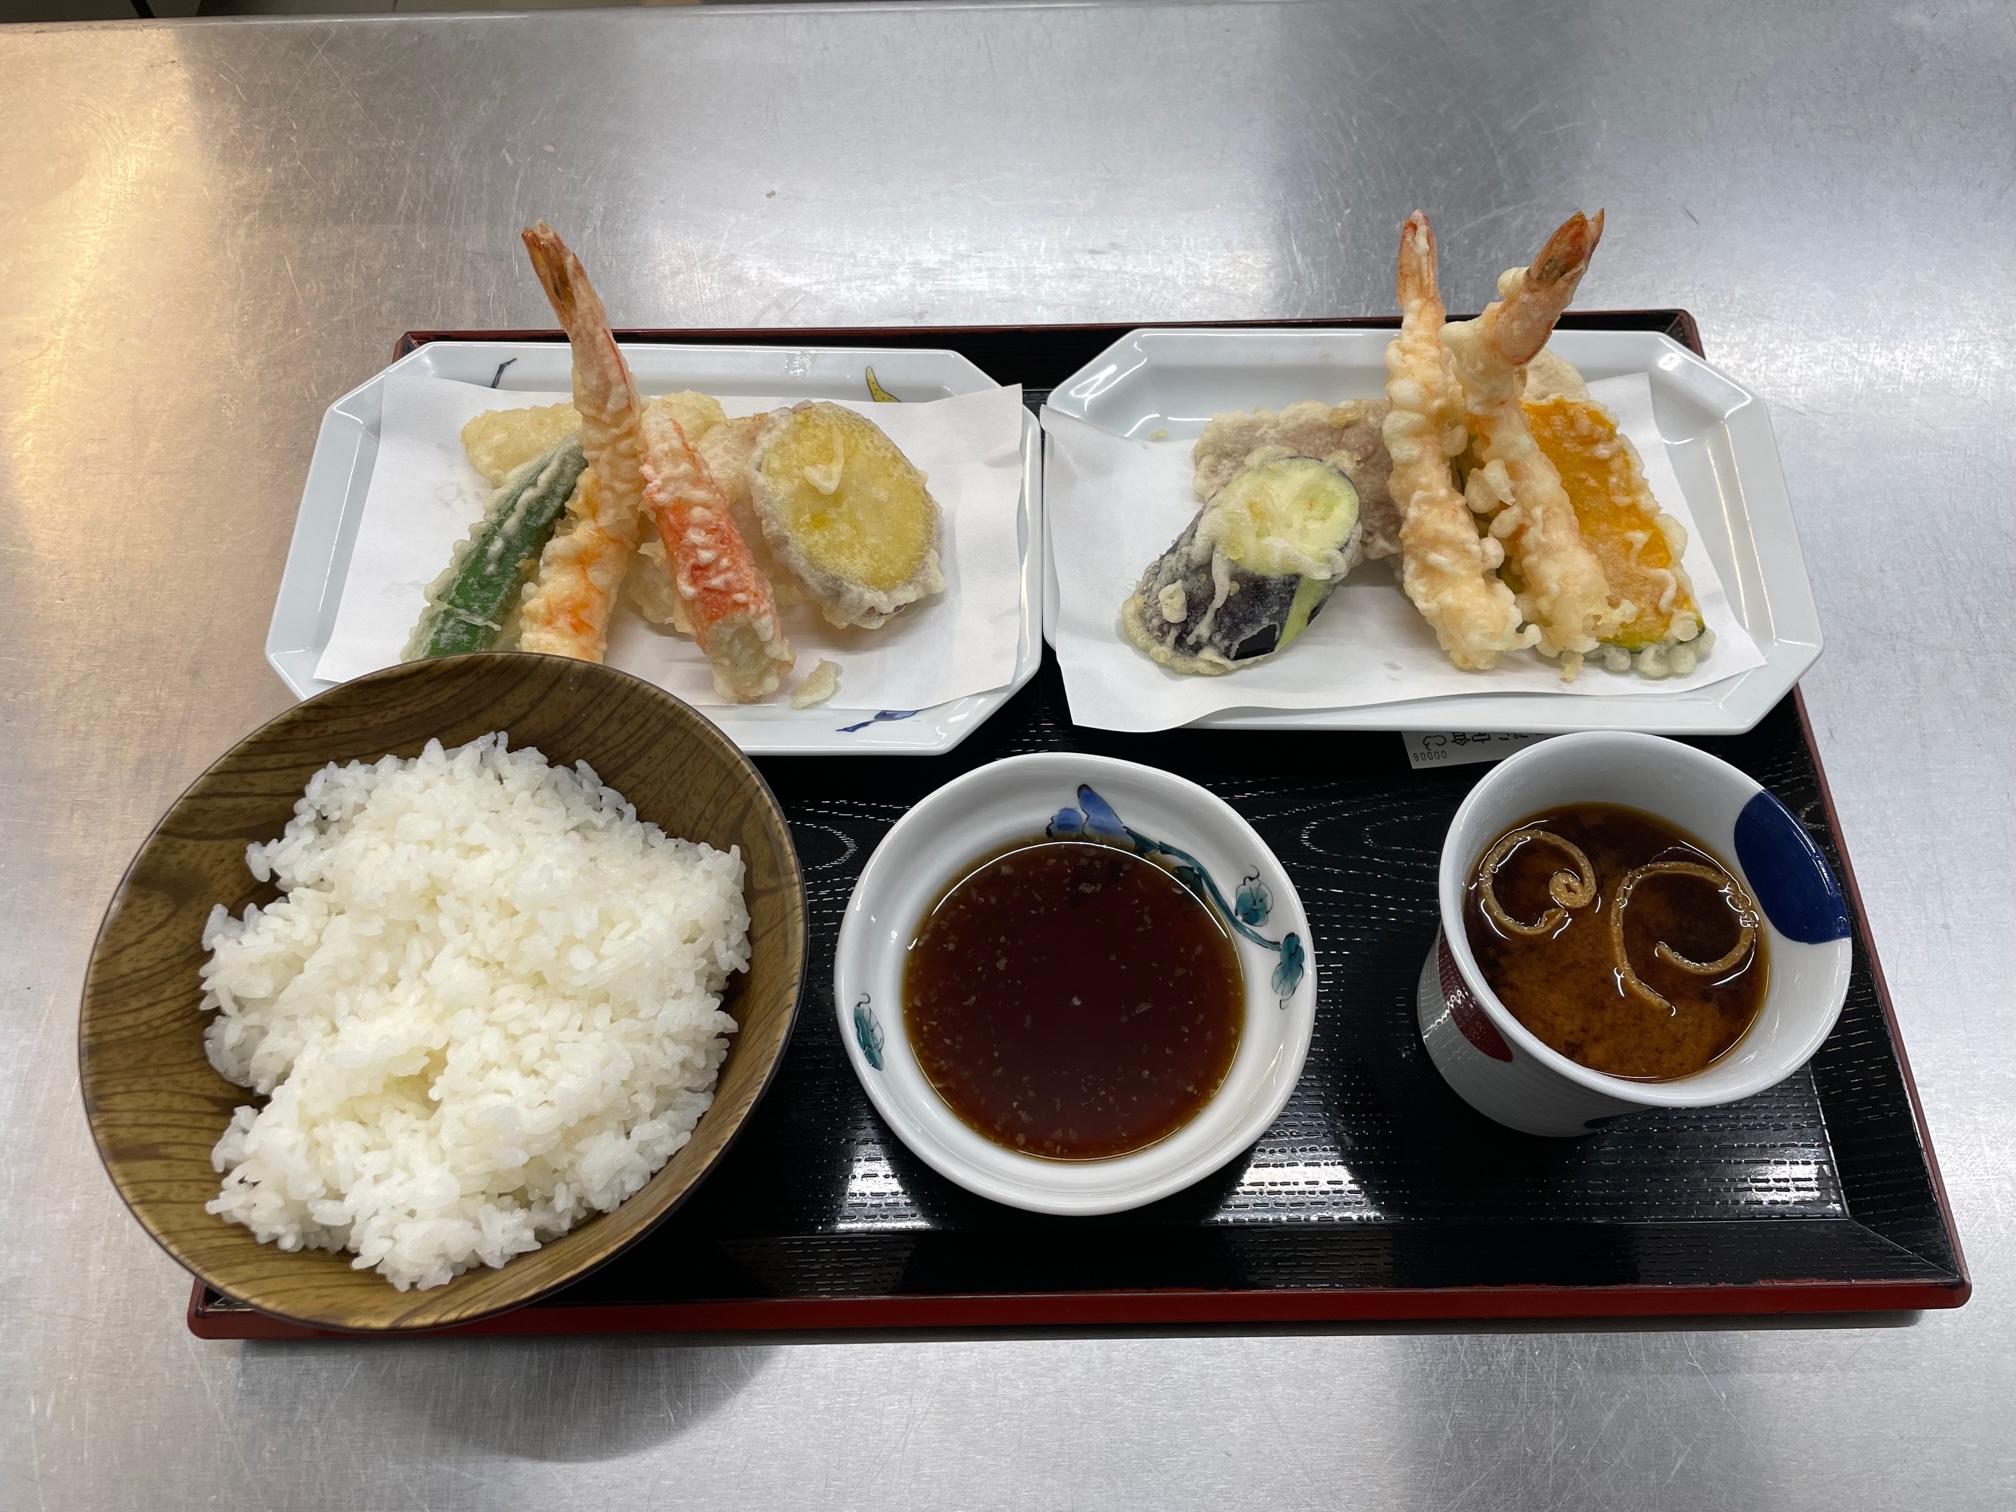 大盛天ぷら定食は、肉、魚、野菜とバラエティーに富んだ定食です。ボリューム満点ですが、薄衣なので、胃もたれせずに食べれます。天つゆは塩分控えめで、ご飯と食べると、卵かけご飯のような風味。薄衣だけに素材の味が決め手となり、食材の吟味に日々努力しています。肉系の天ぷらには特にレモンブラックペッパーのお塩がお勧め。いろいろな調味料もご用意させていただいています。